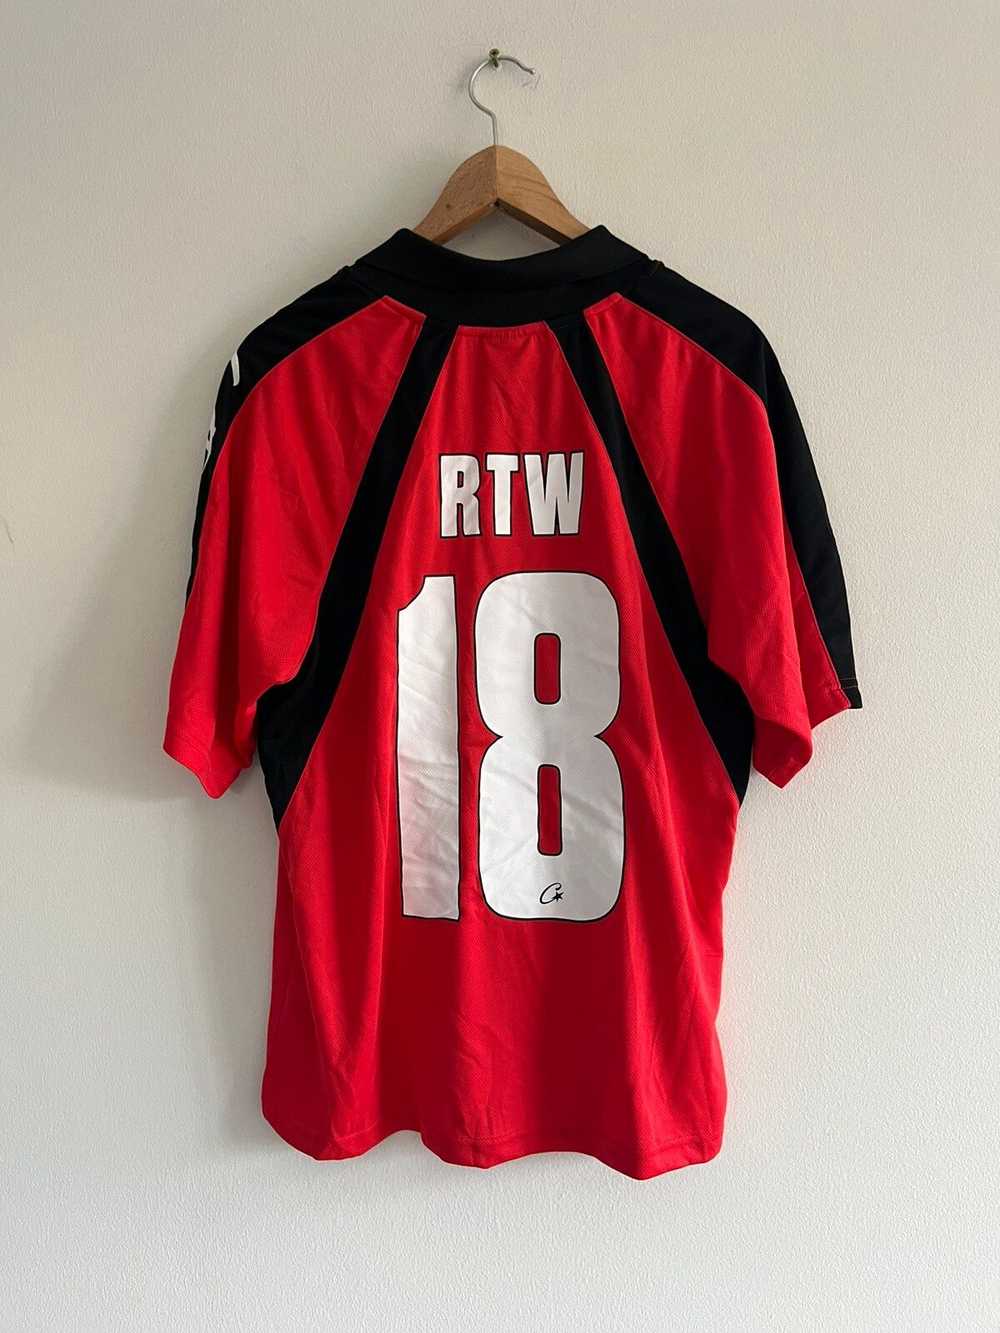 Corteiz Cortiez - RTW red jersey - image 2